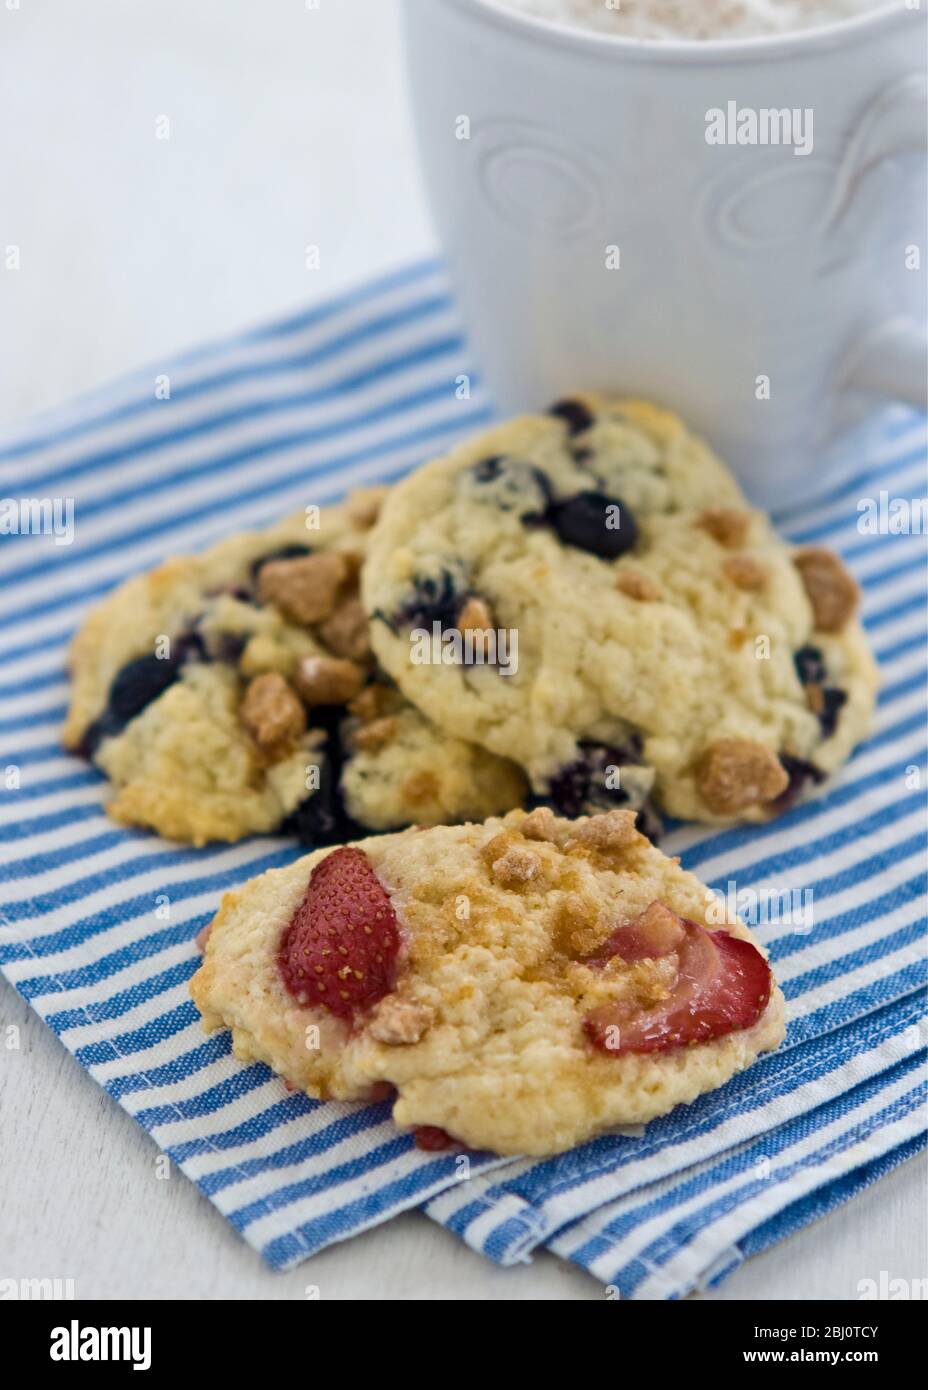 Petits gâteaux doux aux baies et aux noix sur une serviette rayée bleue et blanche avec tasse de cappuccino - Banque D'Images